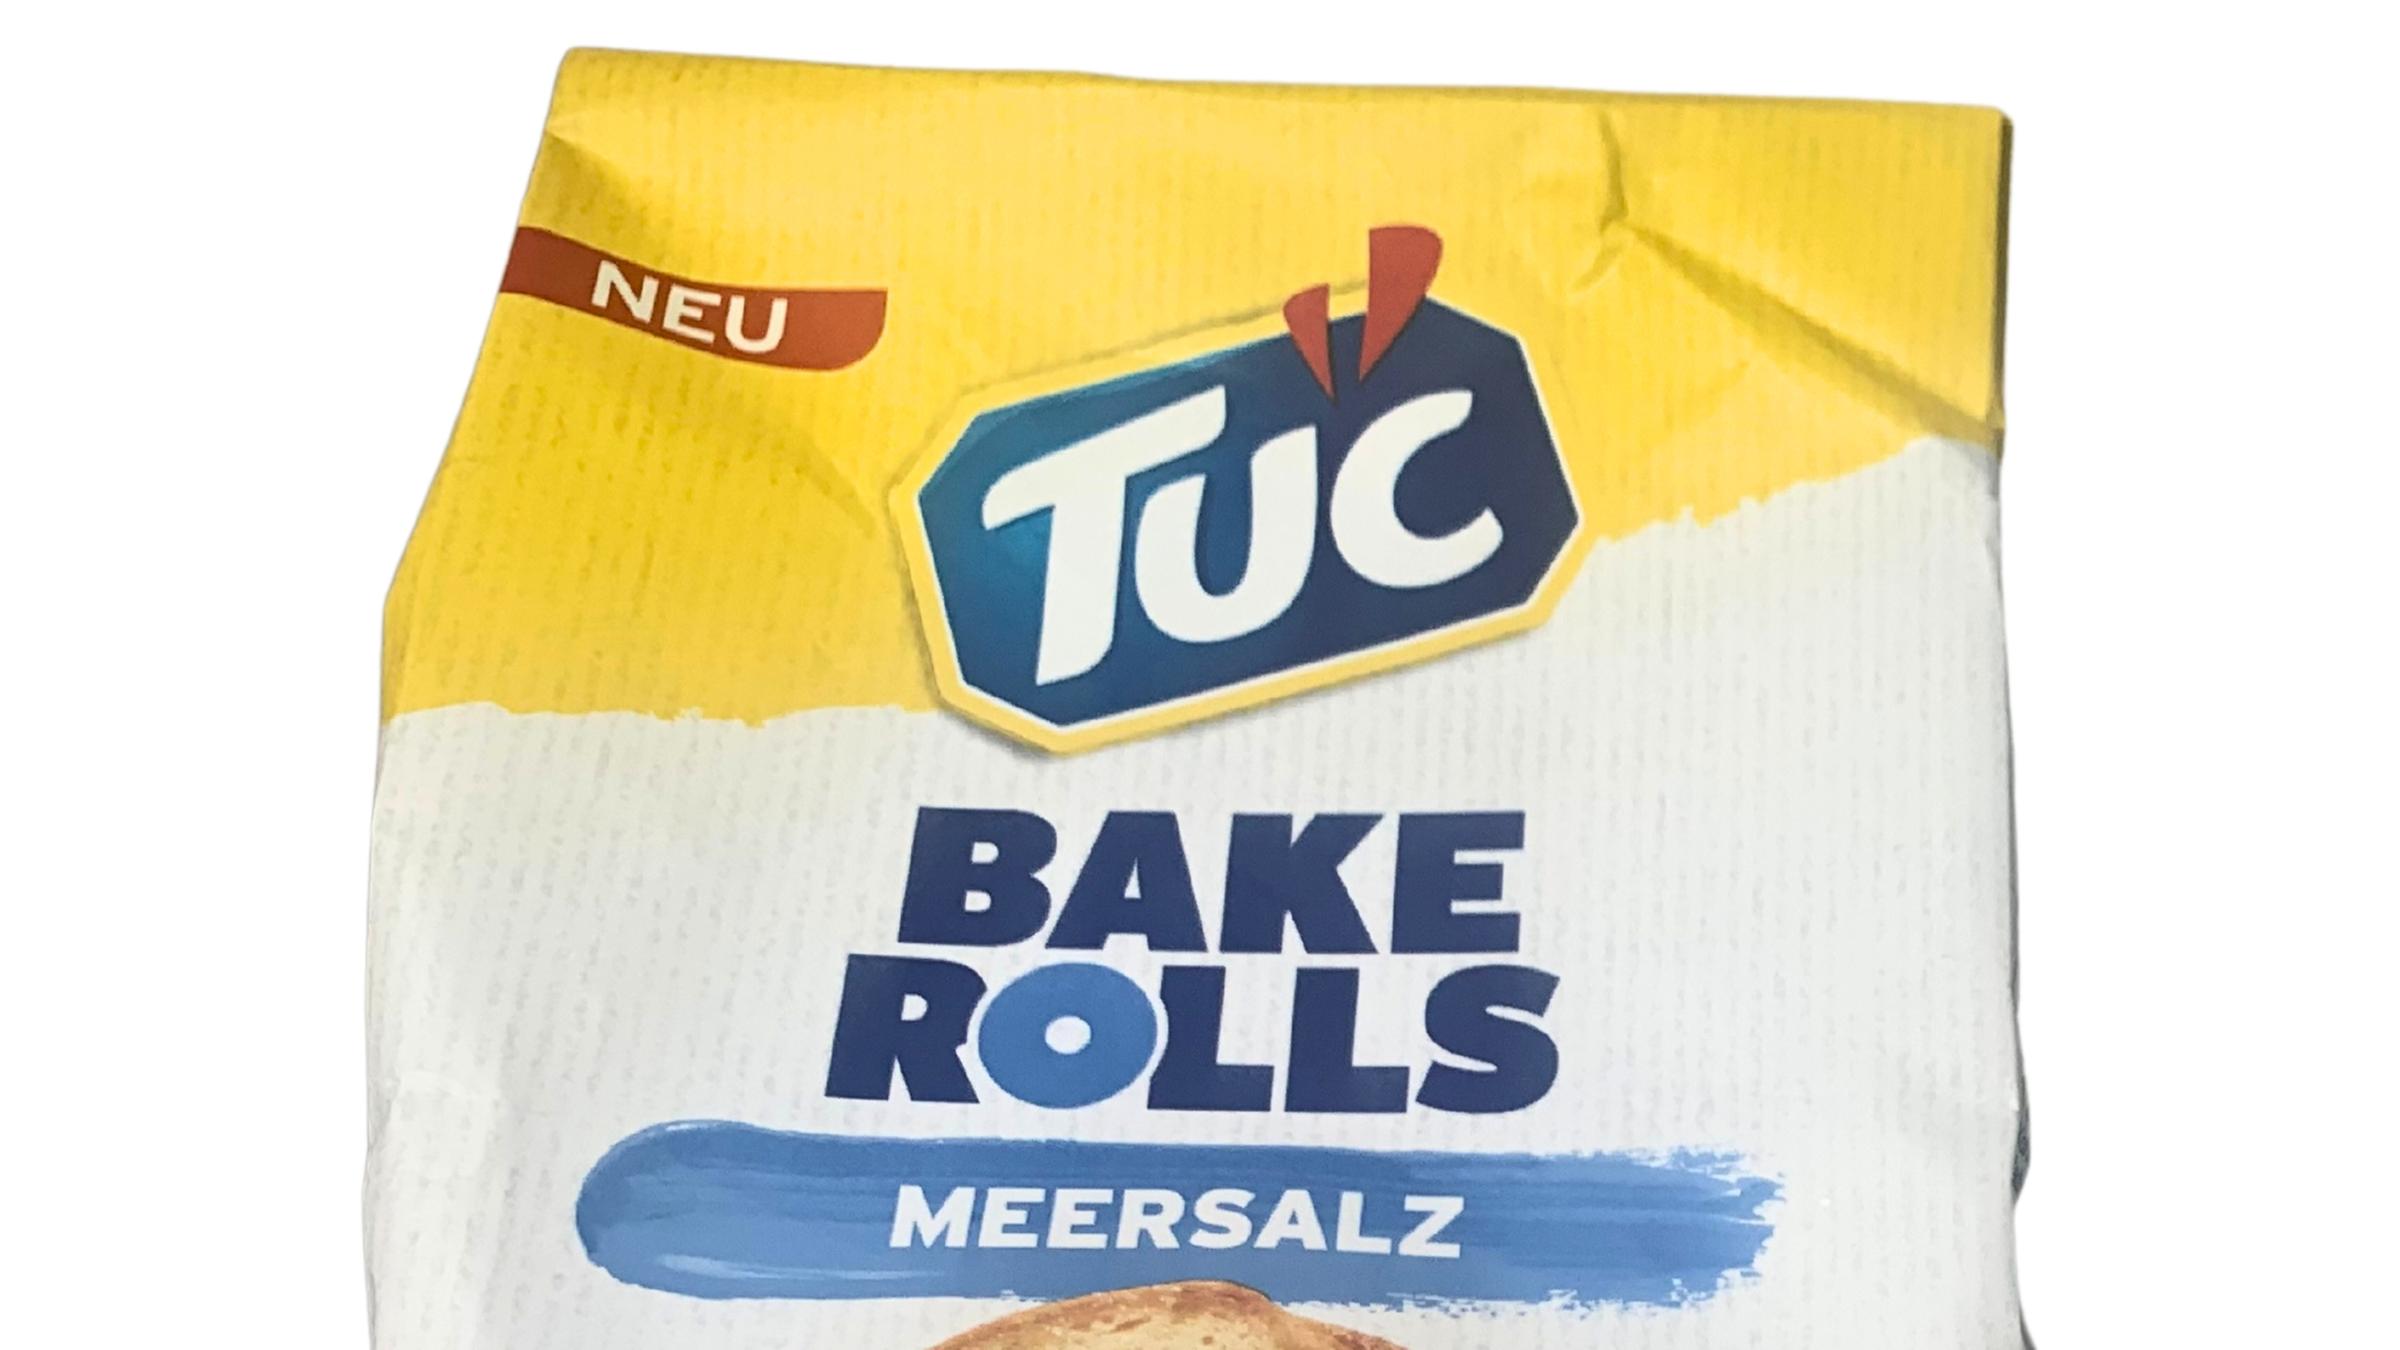 Die Packung der Tuc Bake Rolls